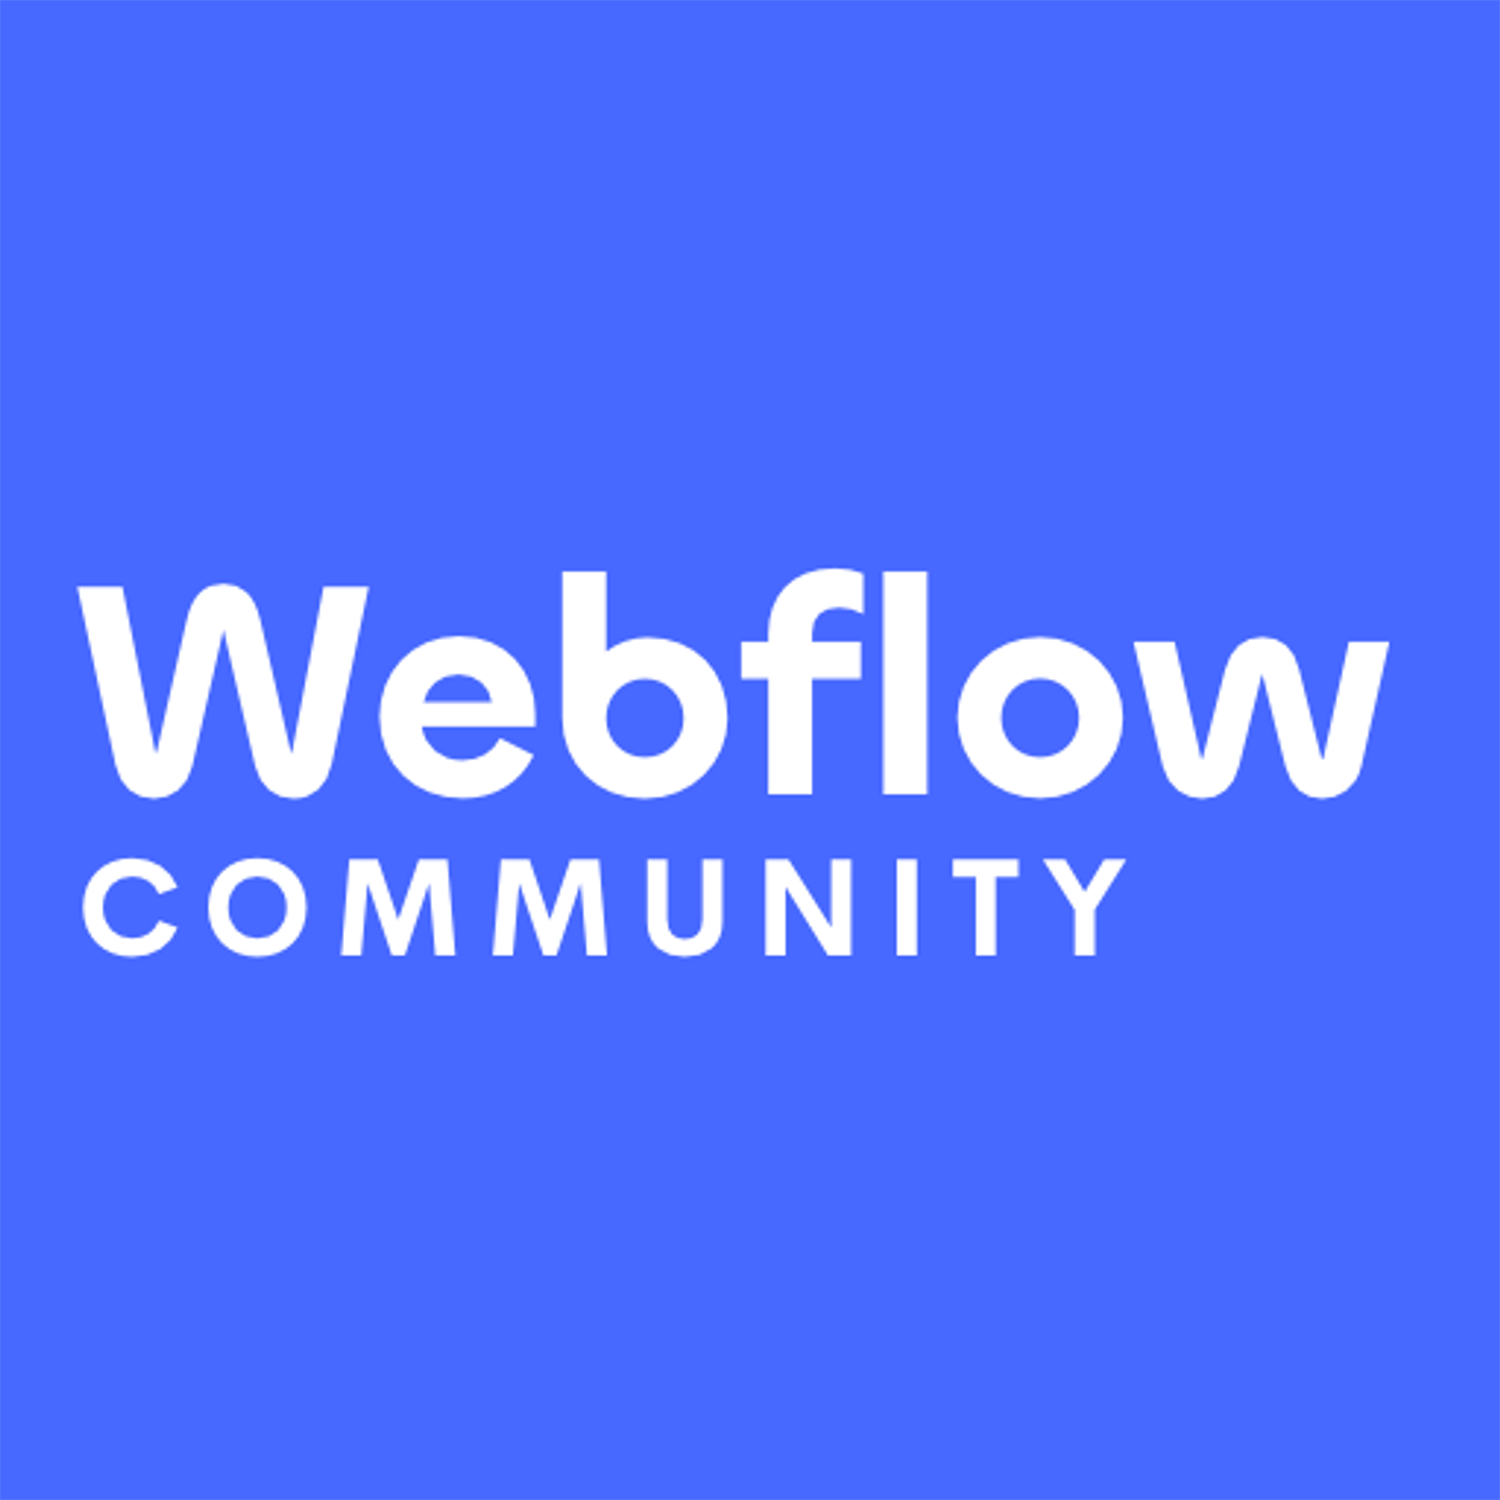 主題標籤 webflowtips